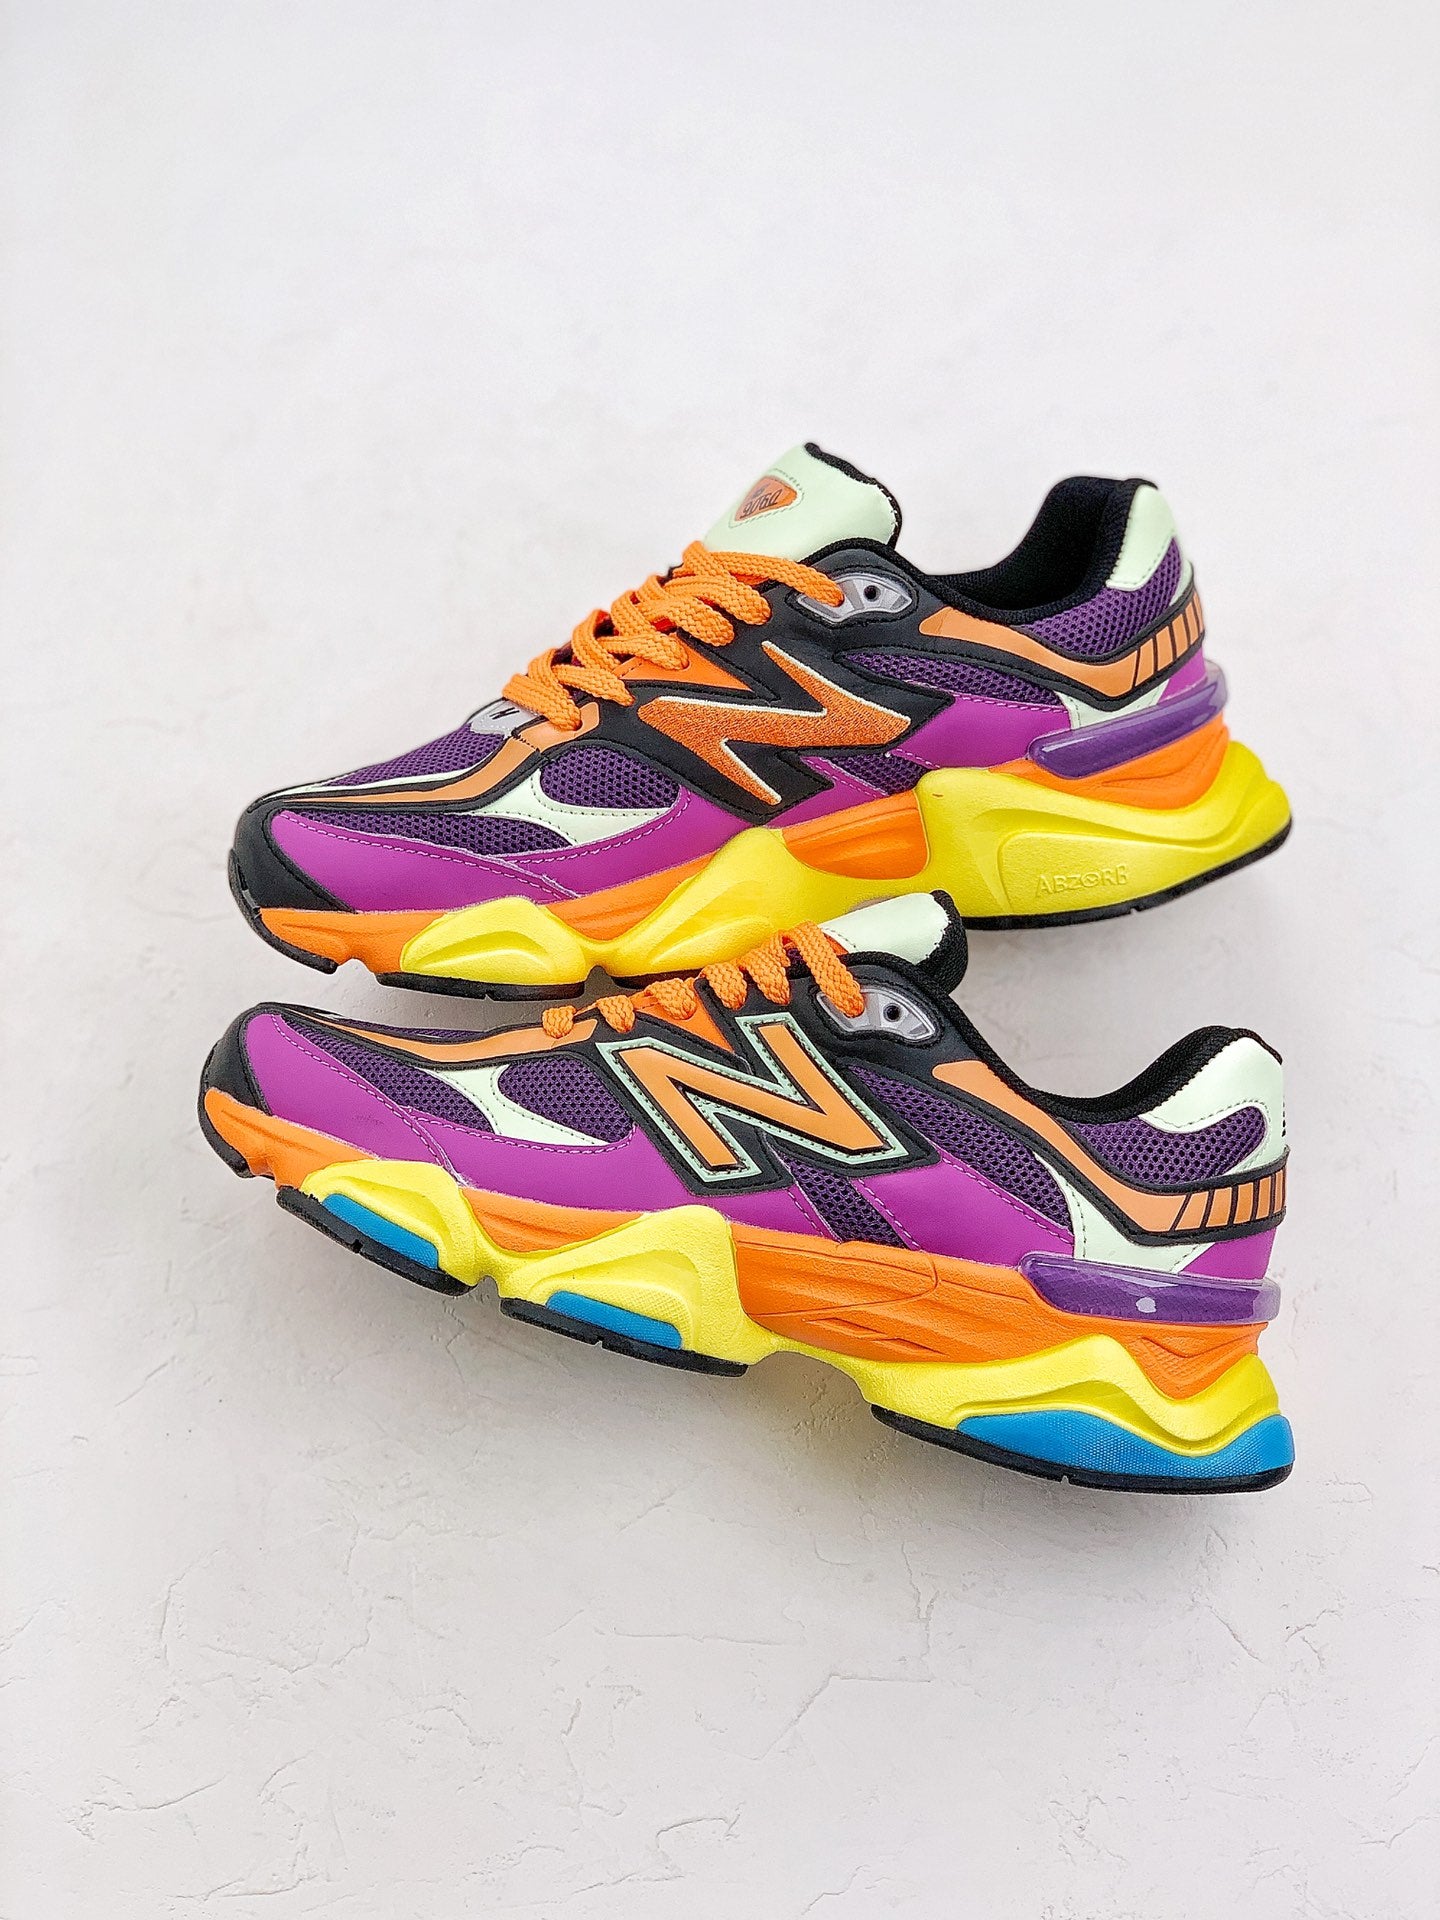 New Balance NB 9060 Prisme Purple